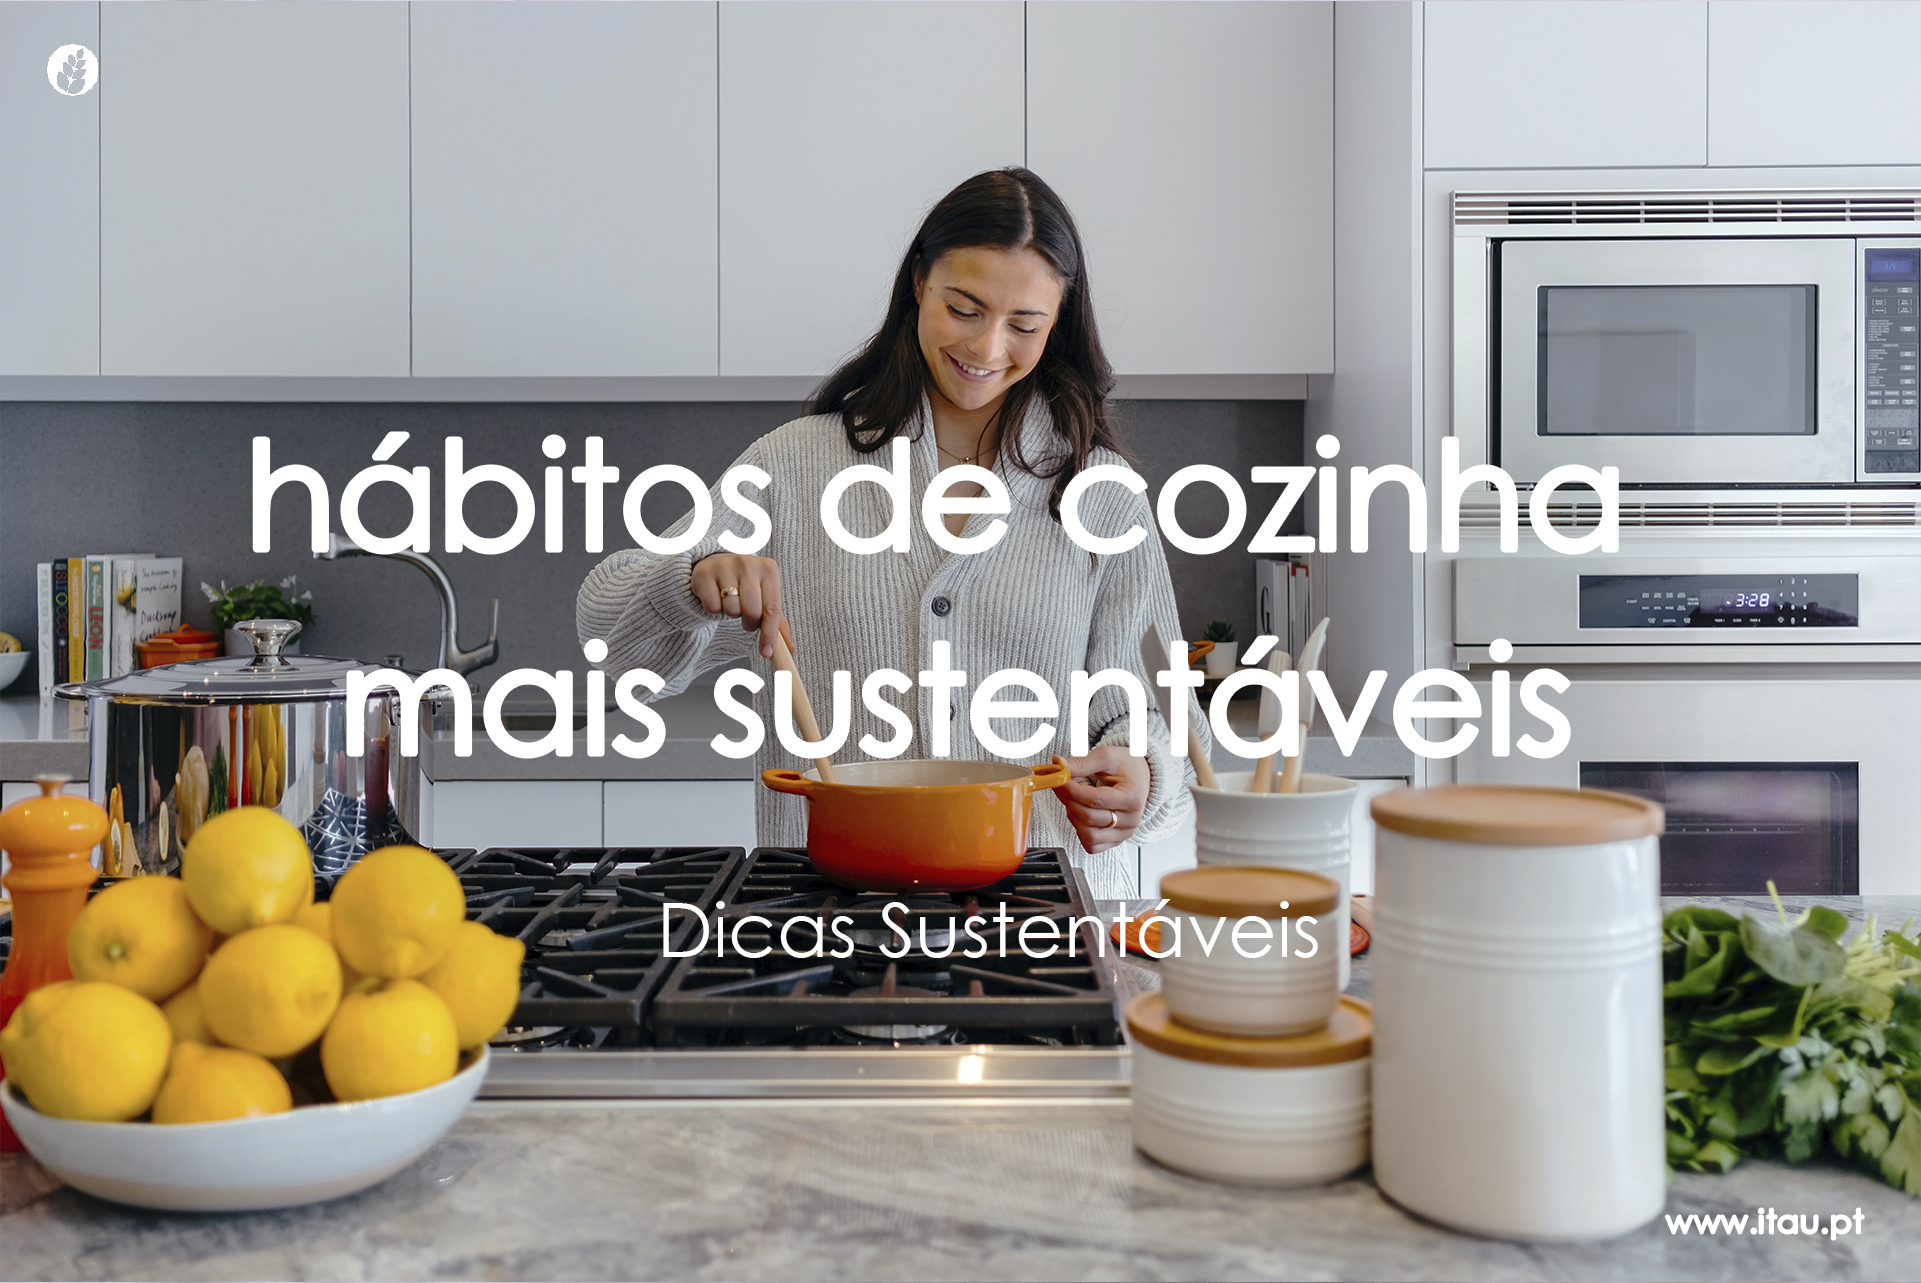 Hábitos de cozinha mais sustentáveis